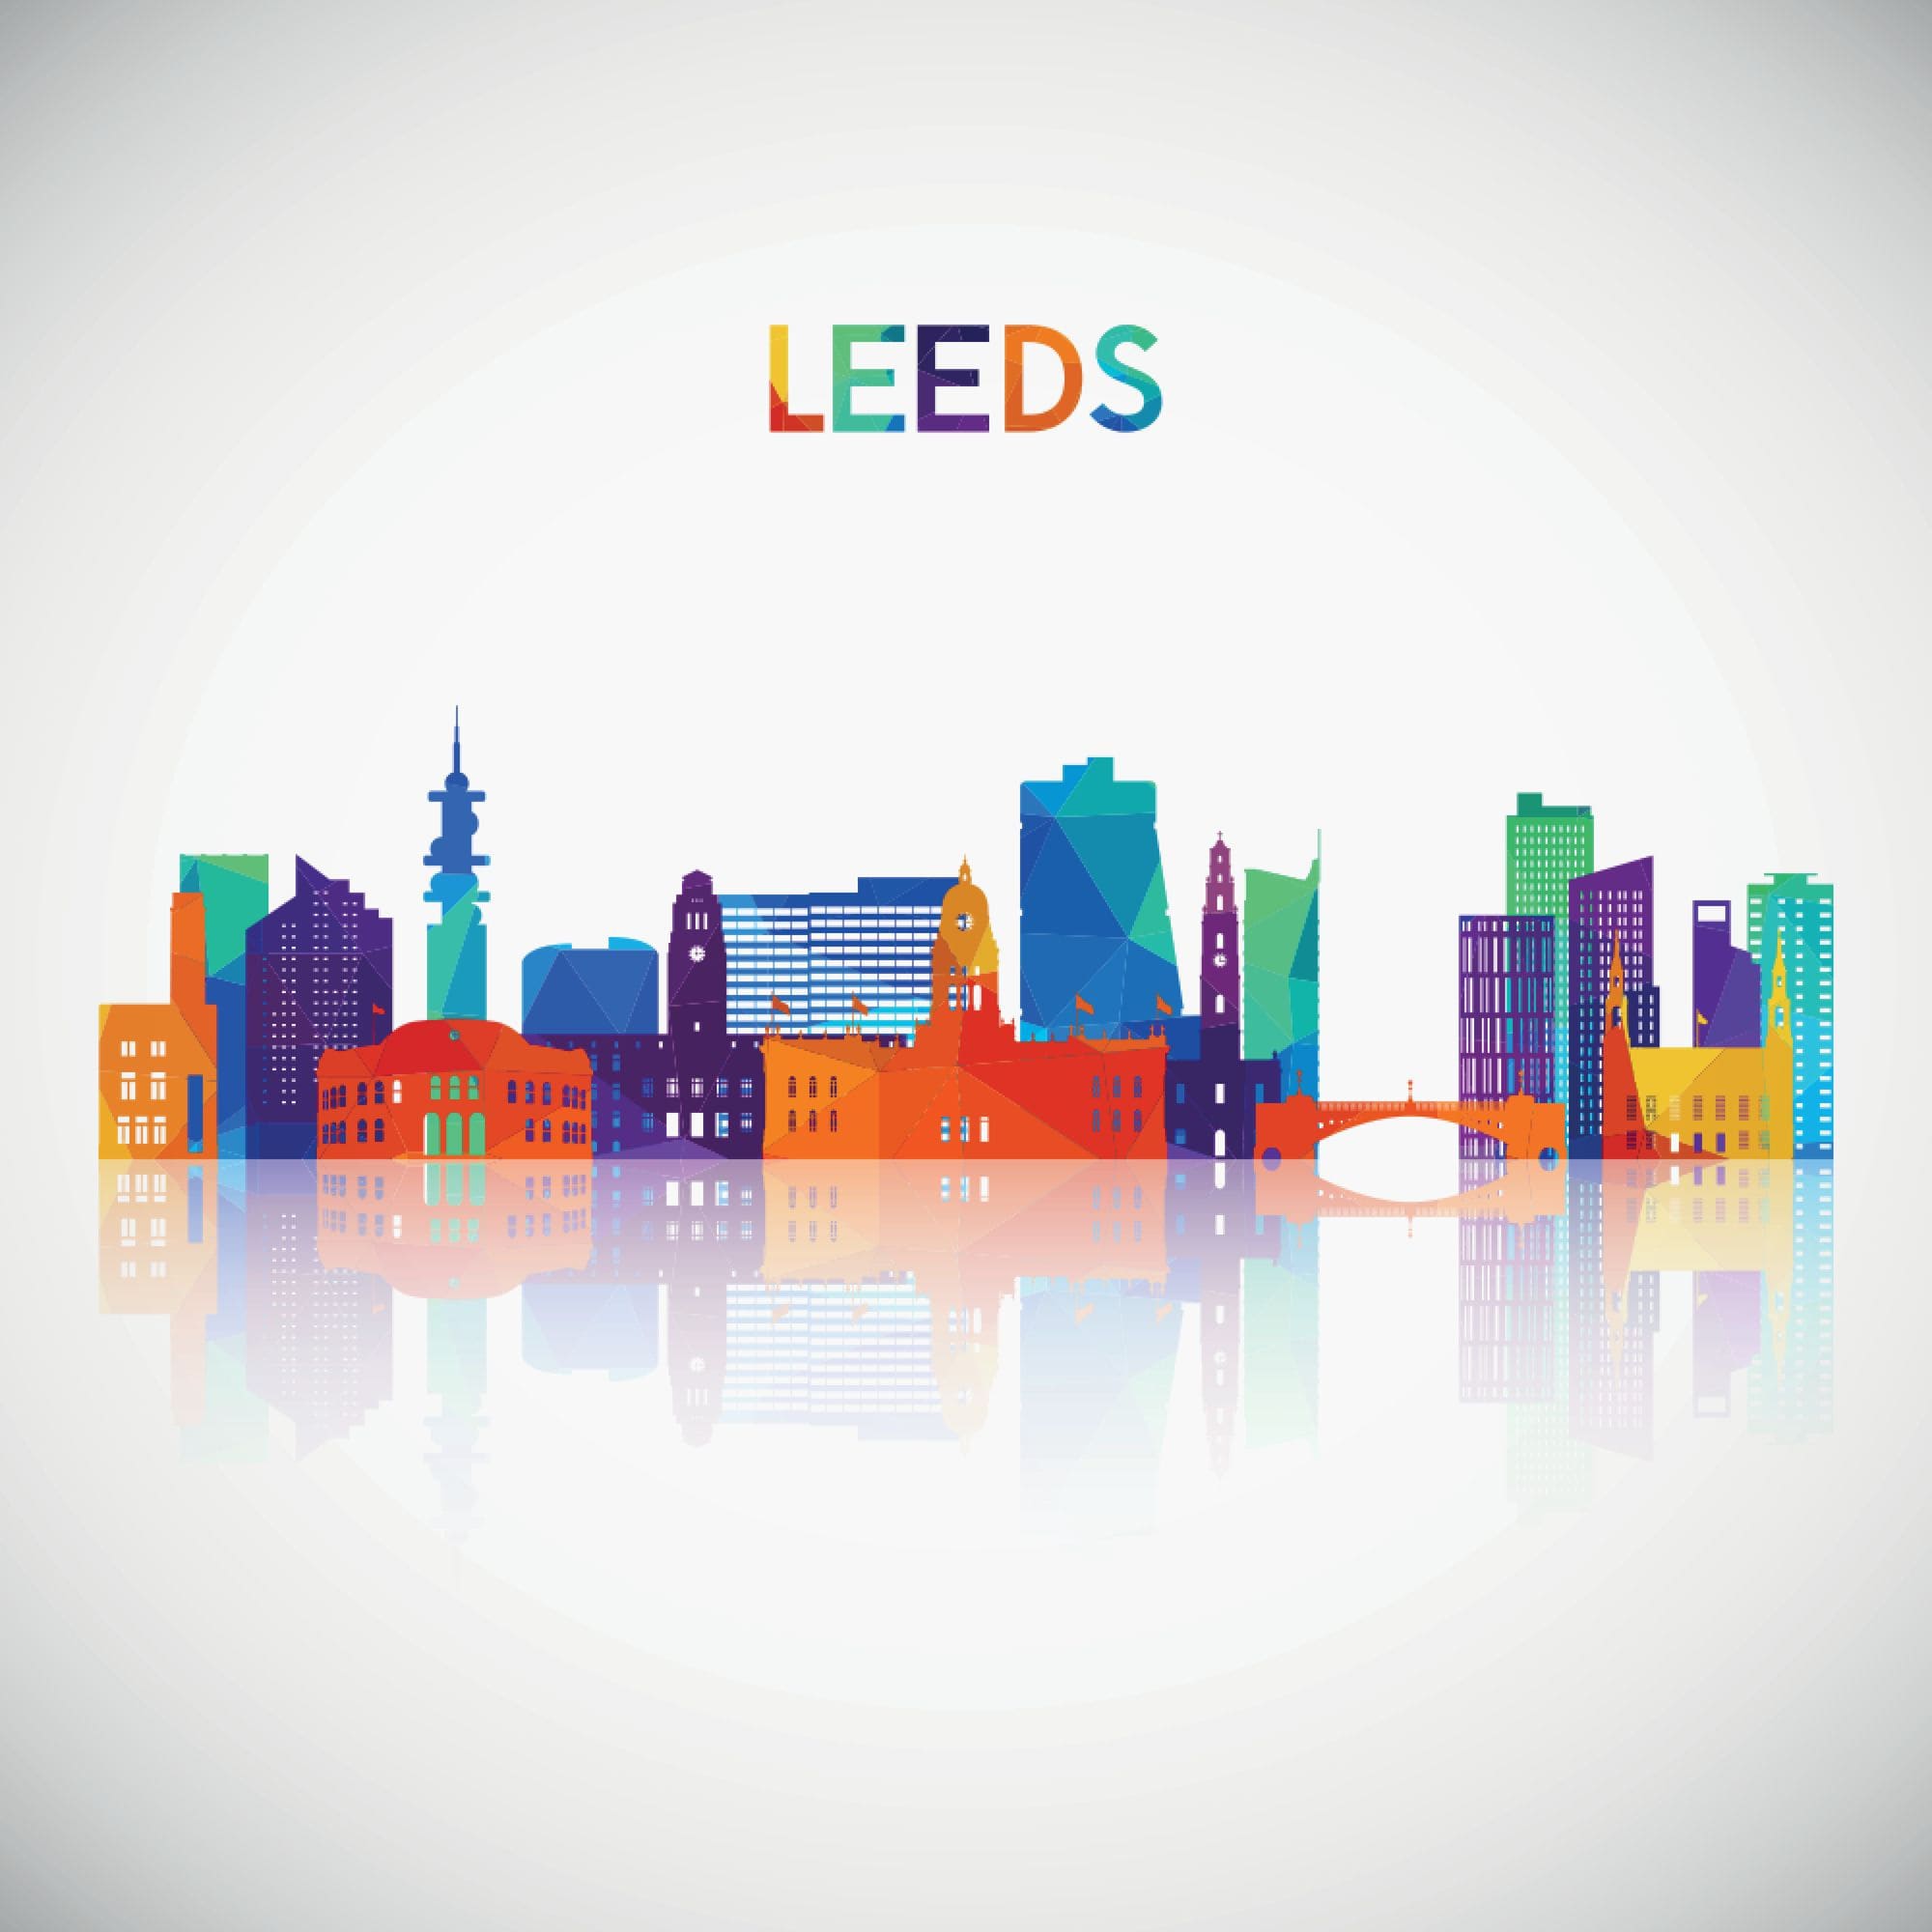 Best Universities in Leeds